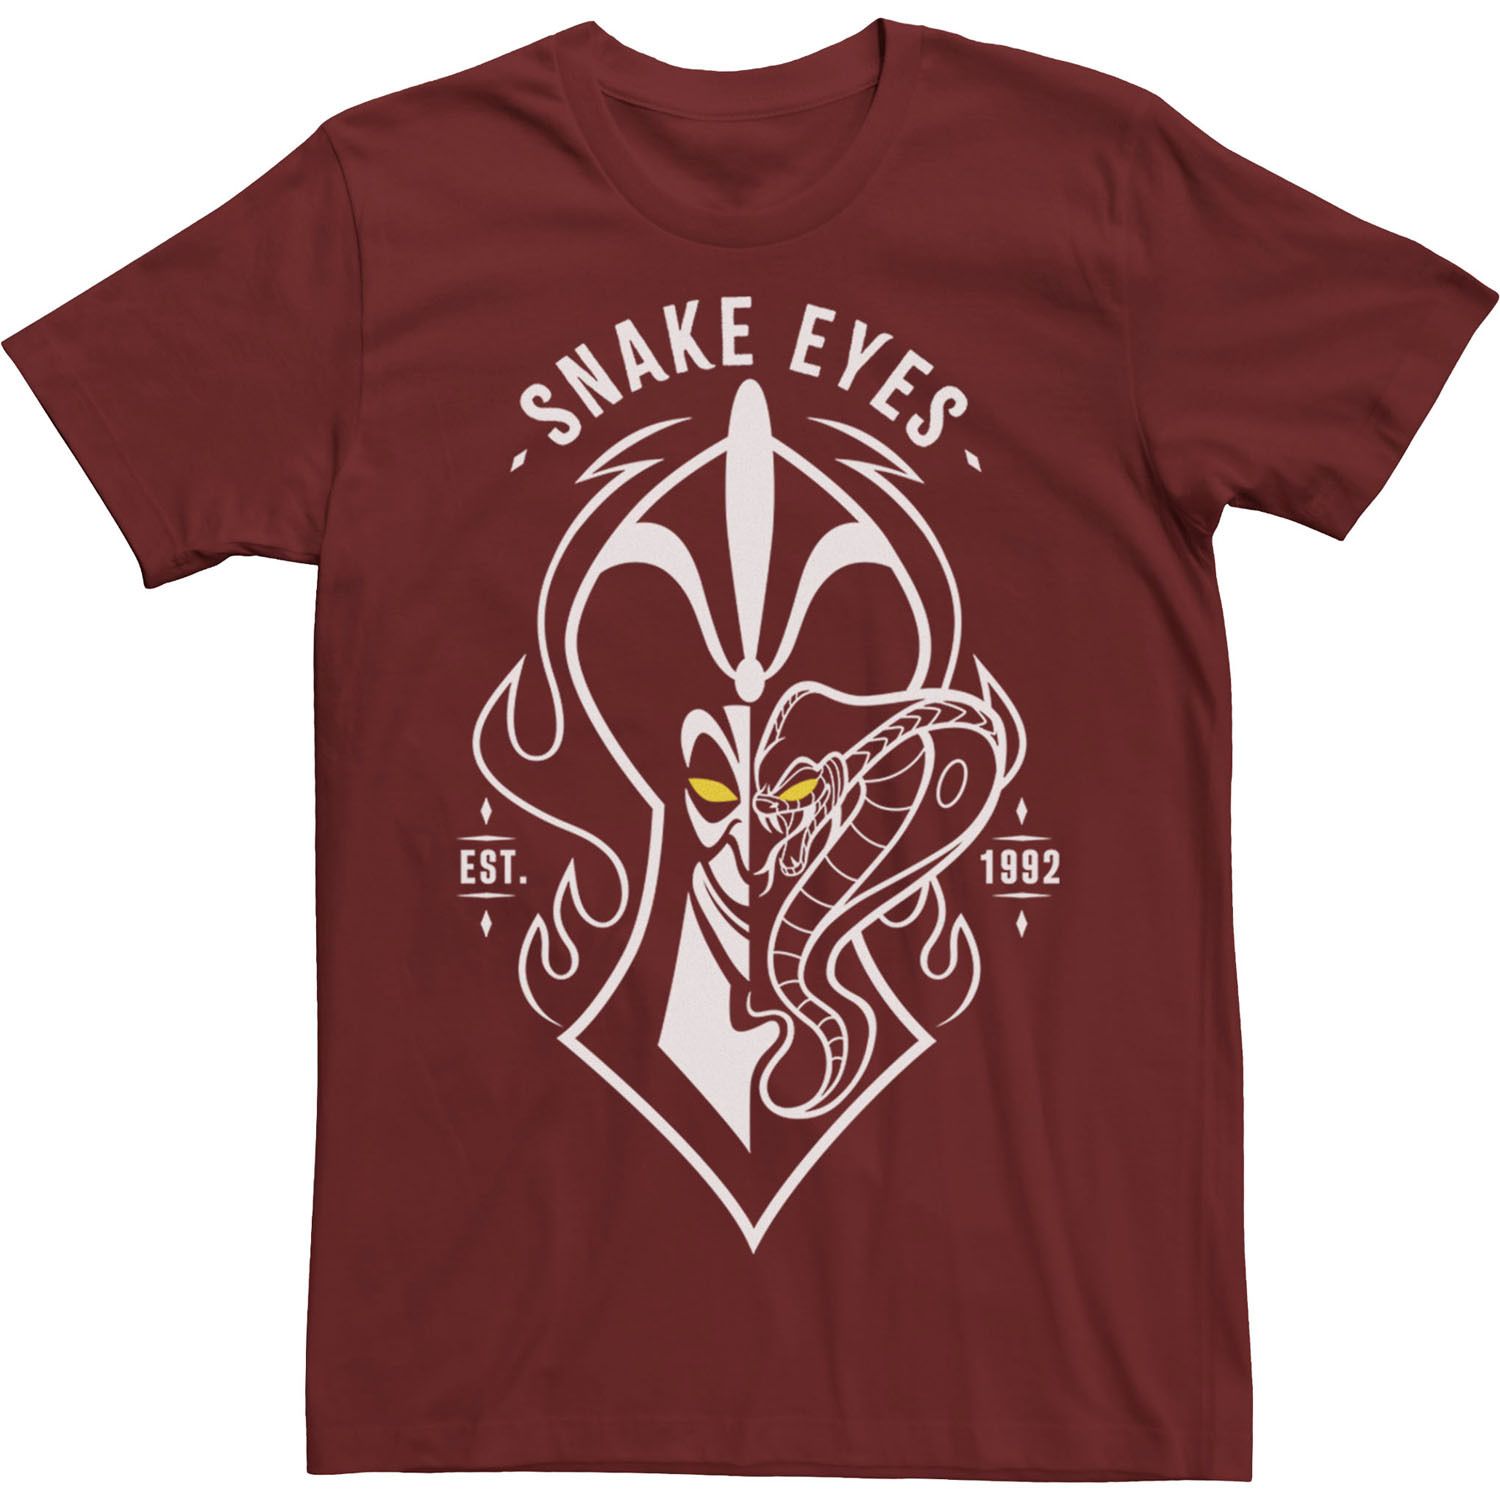 Мужская футболка Disney Villains Jafar Snake Eyes Est 1992 г. Licensed Character мужская футболка disney villains ecstatic jafar licensed character